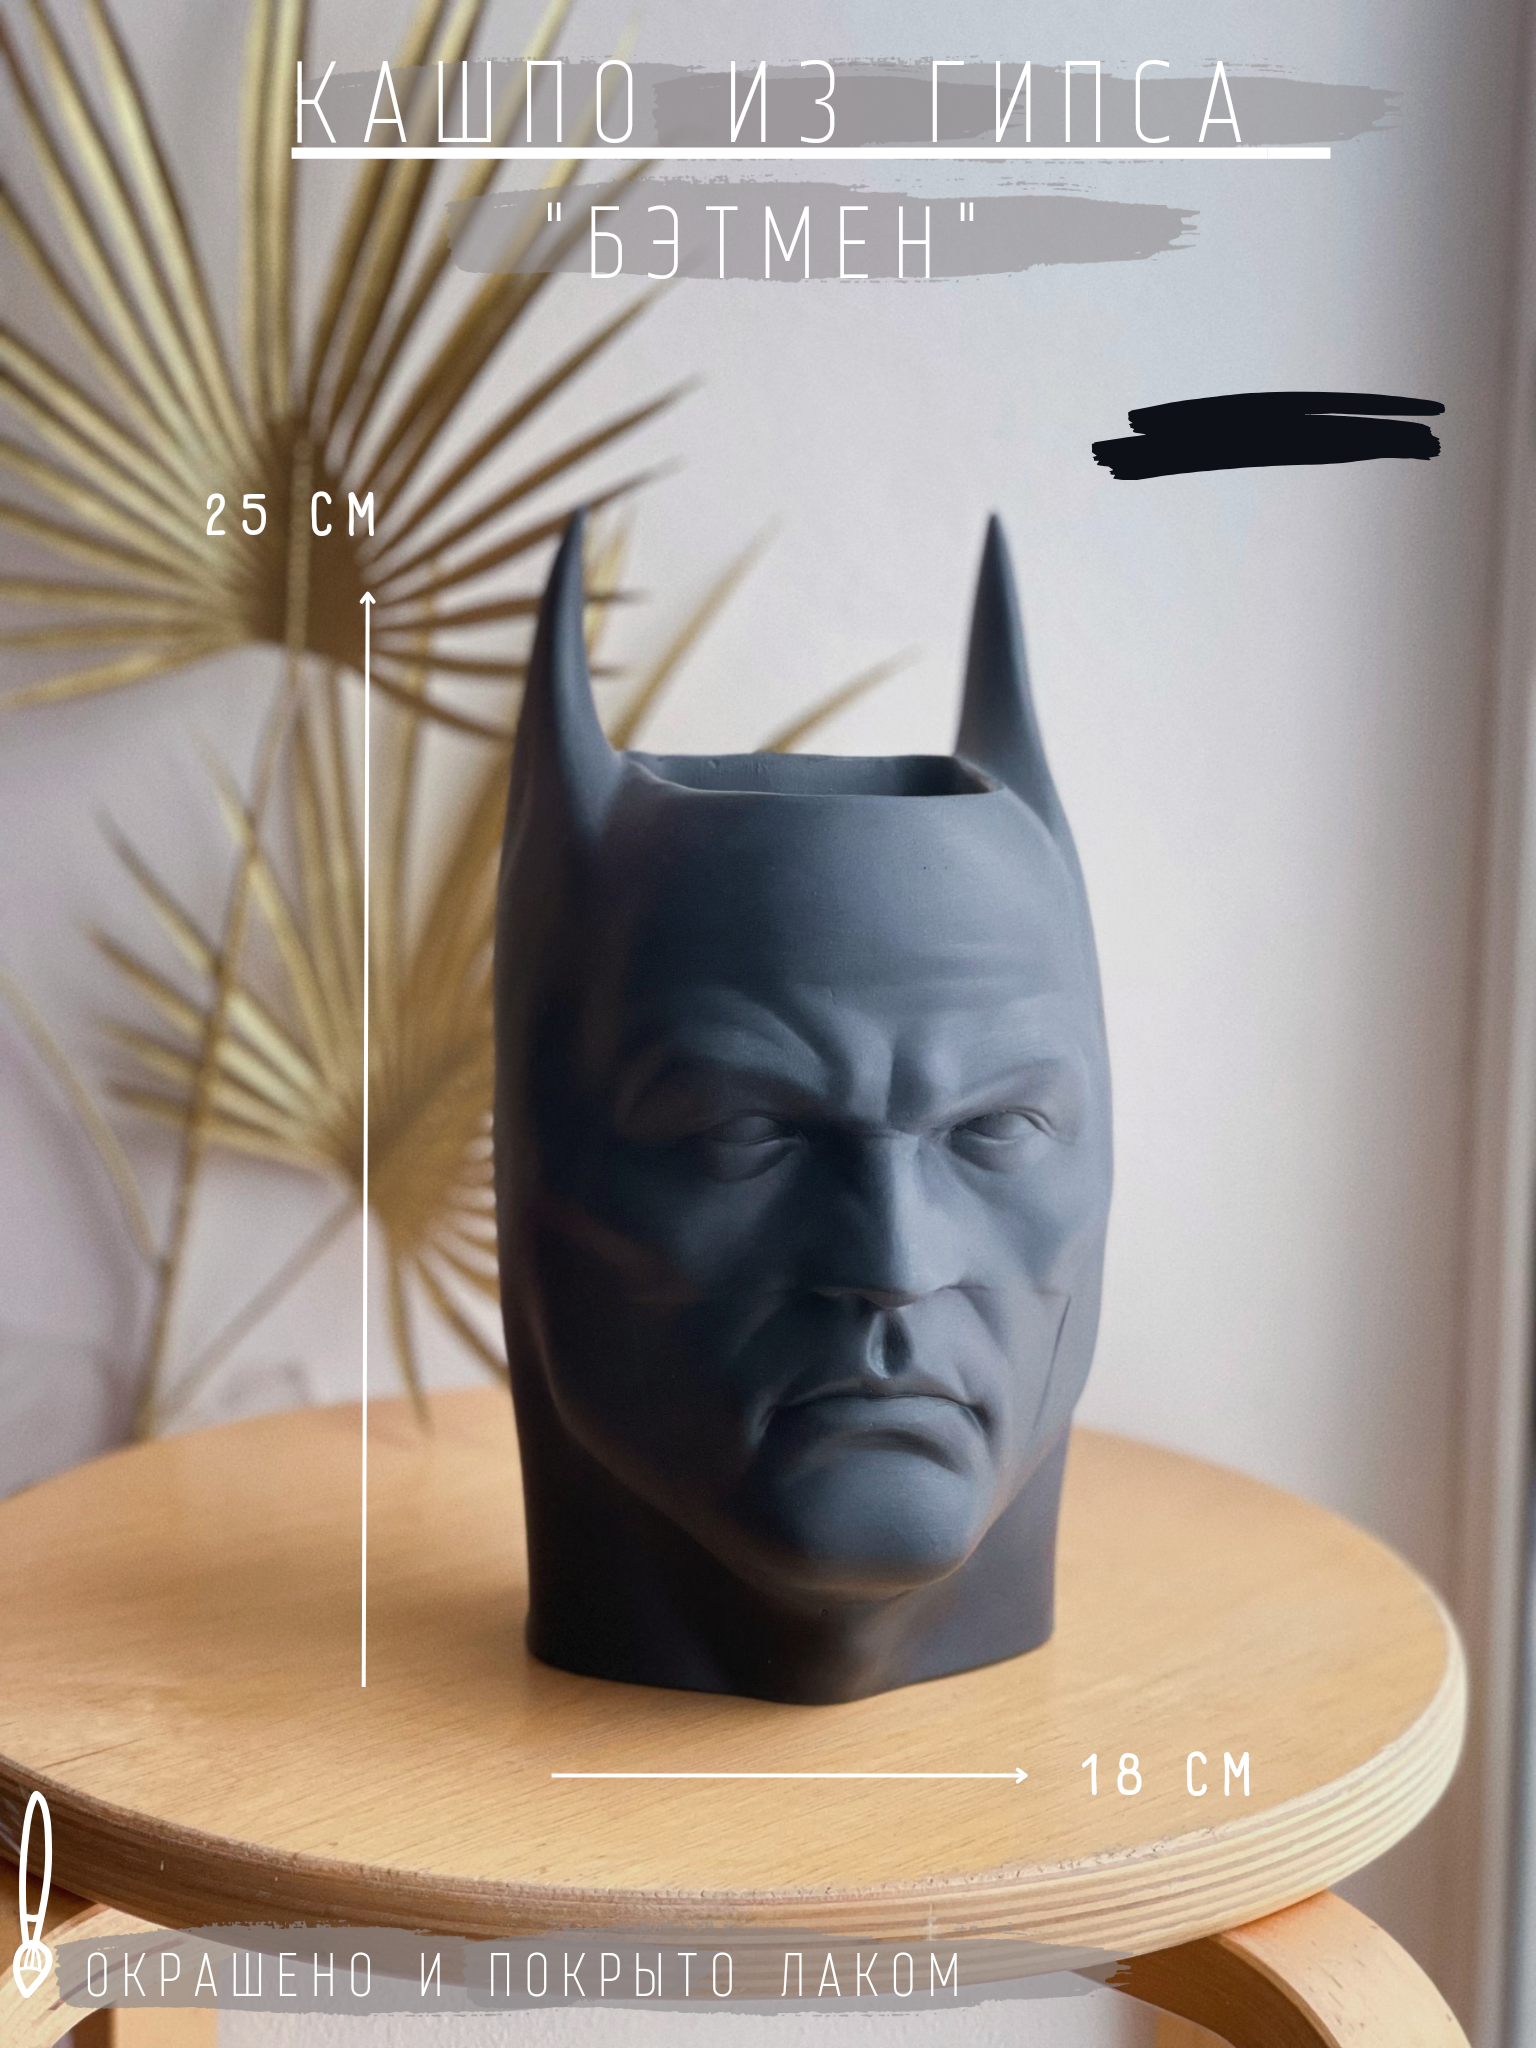 Кашпо из гипса "Бэтмен", 25 см, черный / органайзер / статуэтка